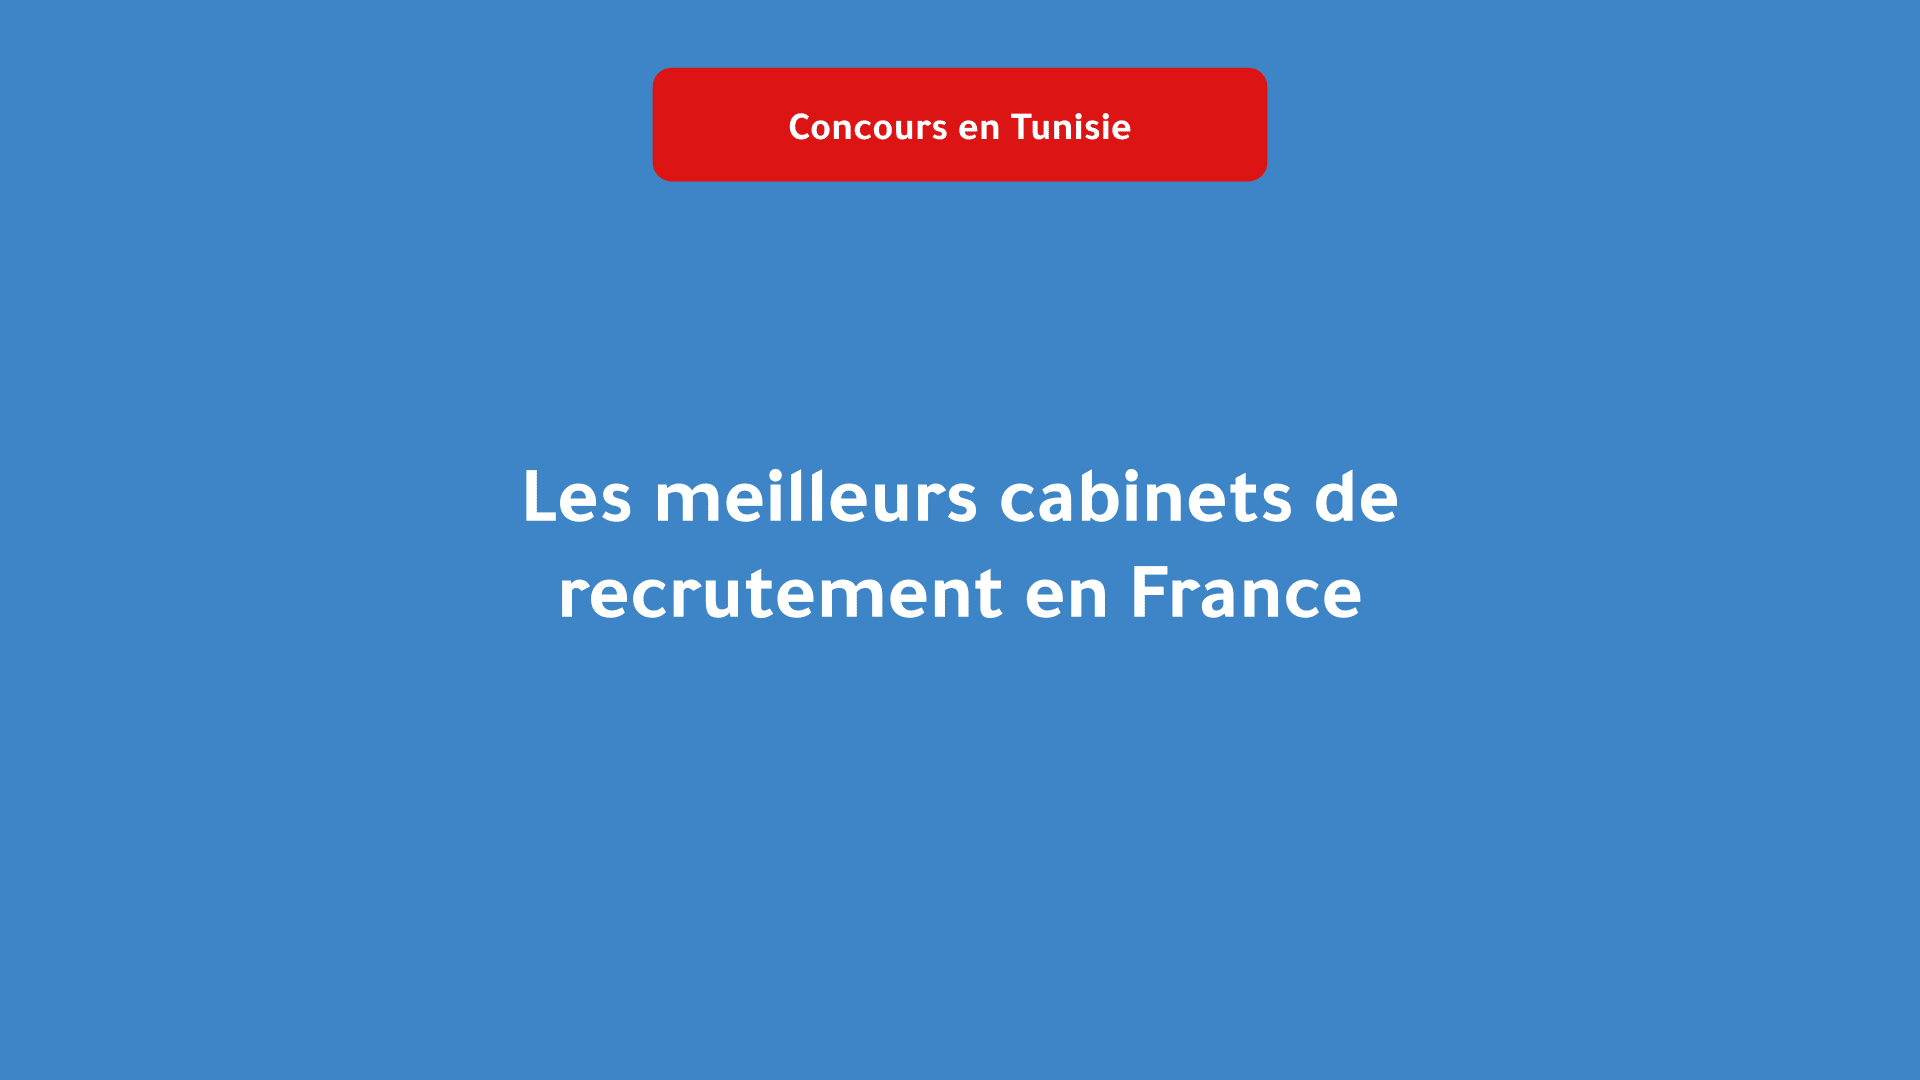 Les meilleurs cabinets de recrutement en France